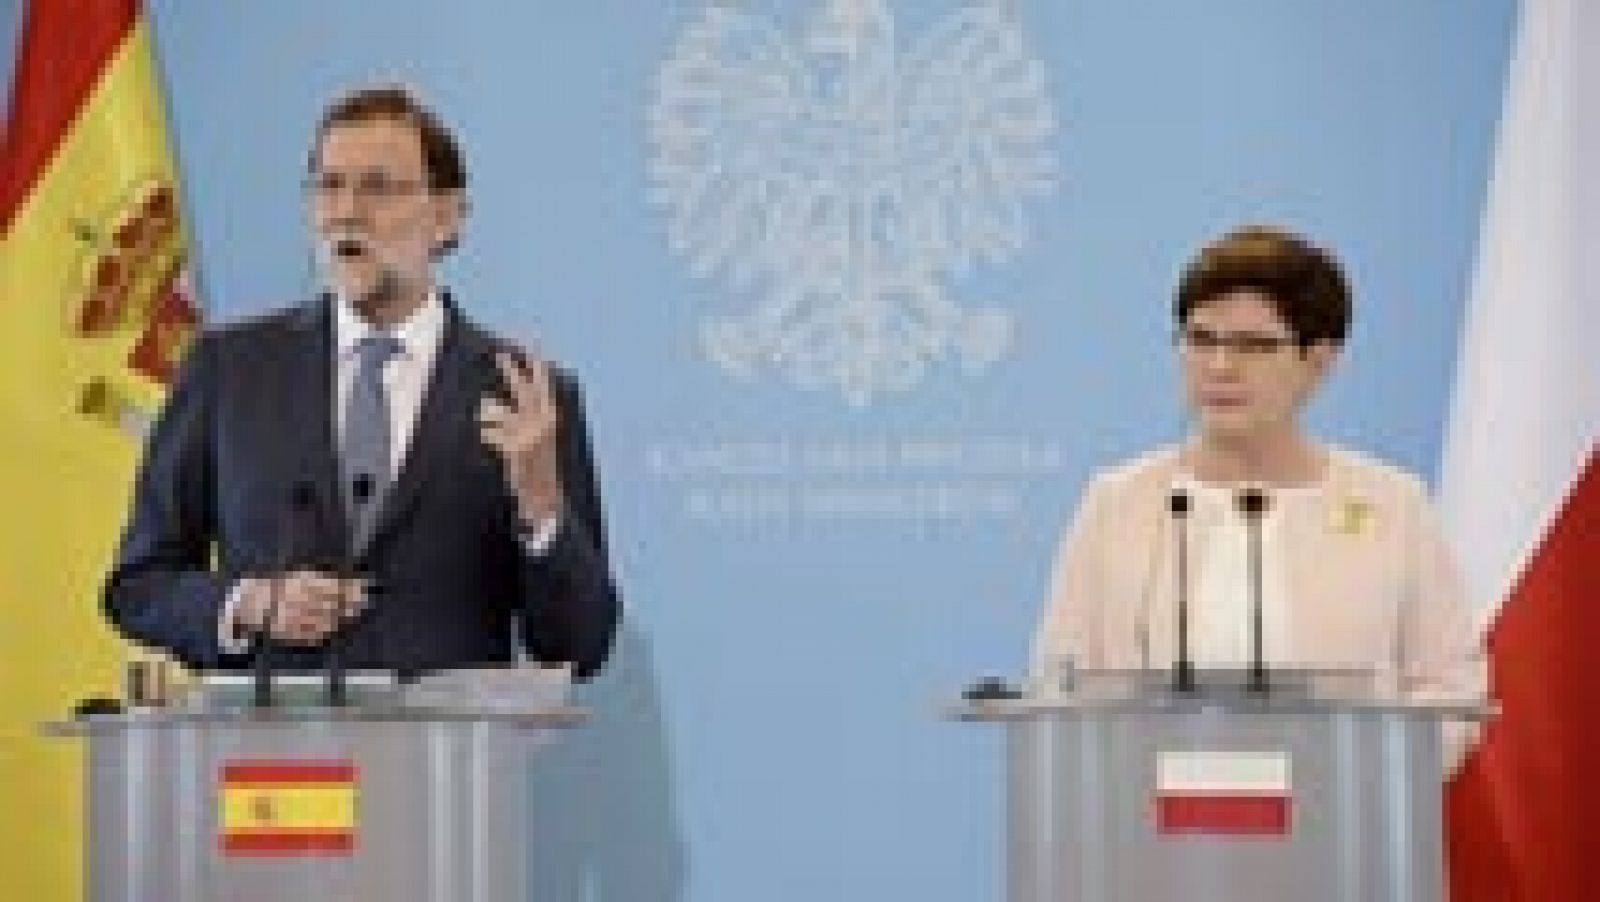 El presidente del Gobierno, Mariano Rajoy, ha anunciado en Varsovia que el Gobierno elevará el próximo lunes tres décimas su previsión de crecimiento del PIB paras este año, hasta el 3%. "Empezamos en el 2,5%, subimos al 2,7%, y ahora creemos que pod